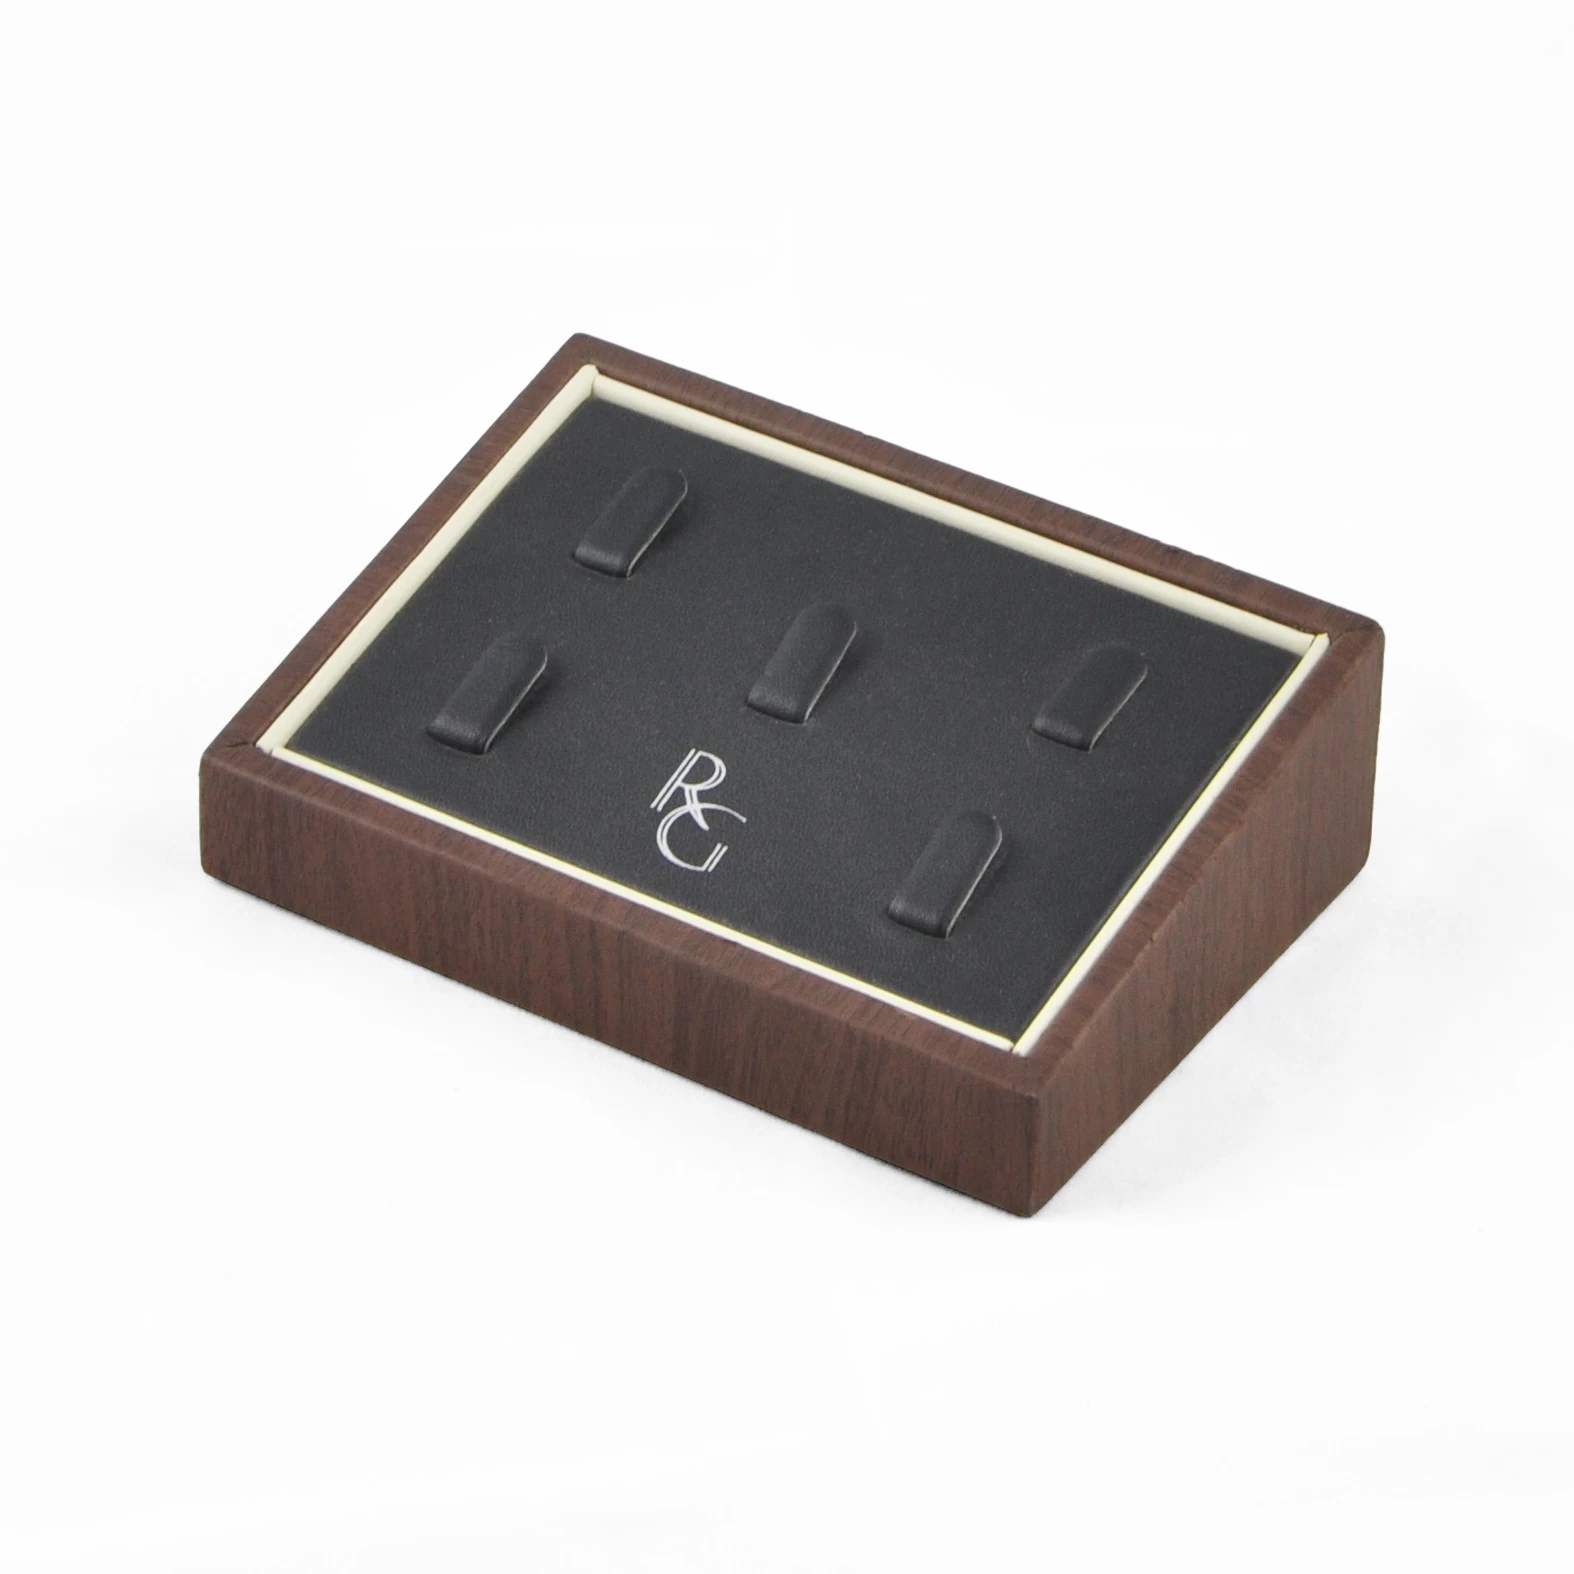 Bespoke jewelry display counter ring slot tray pu leather customiezd